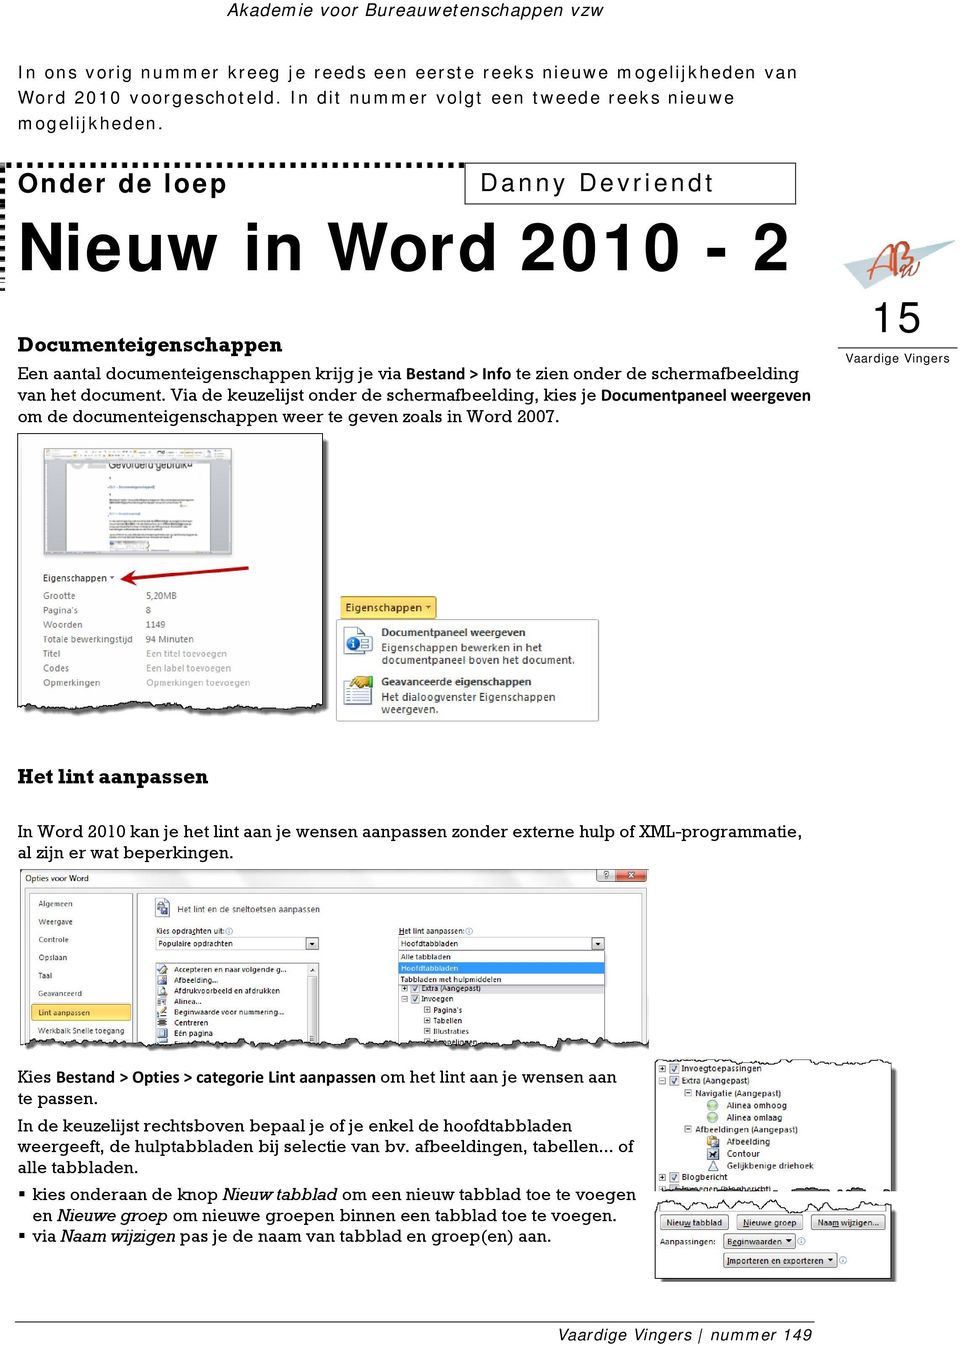 Via de keuzelijst onder de schermafbeelding, kies je Documentpaneel weergeven om de documenteigenschappen weer te geven zoals in Word 2007.